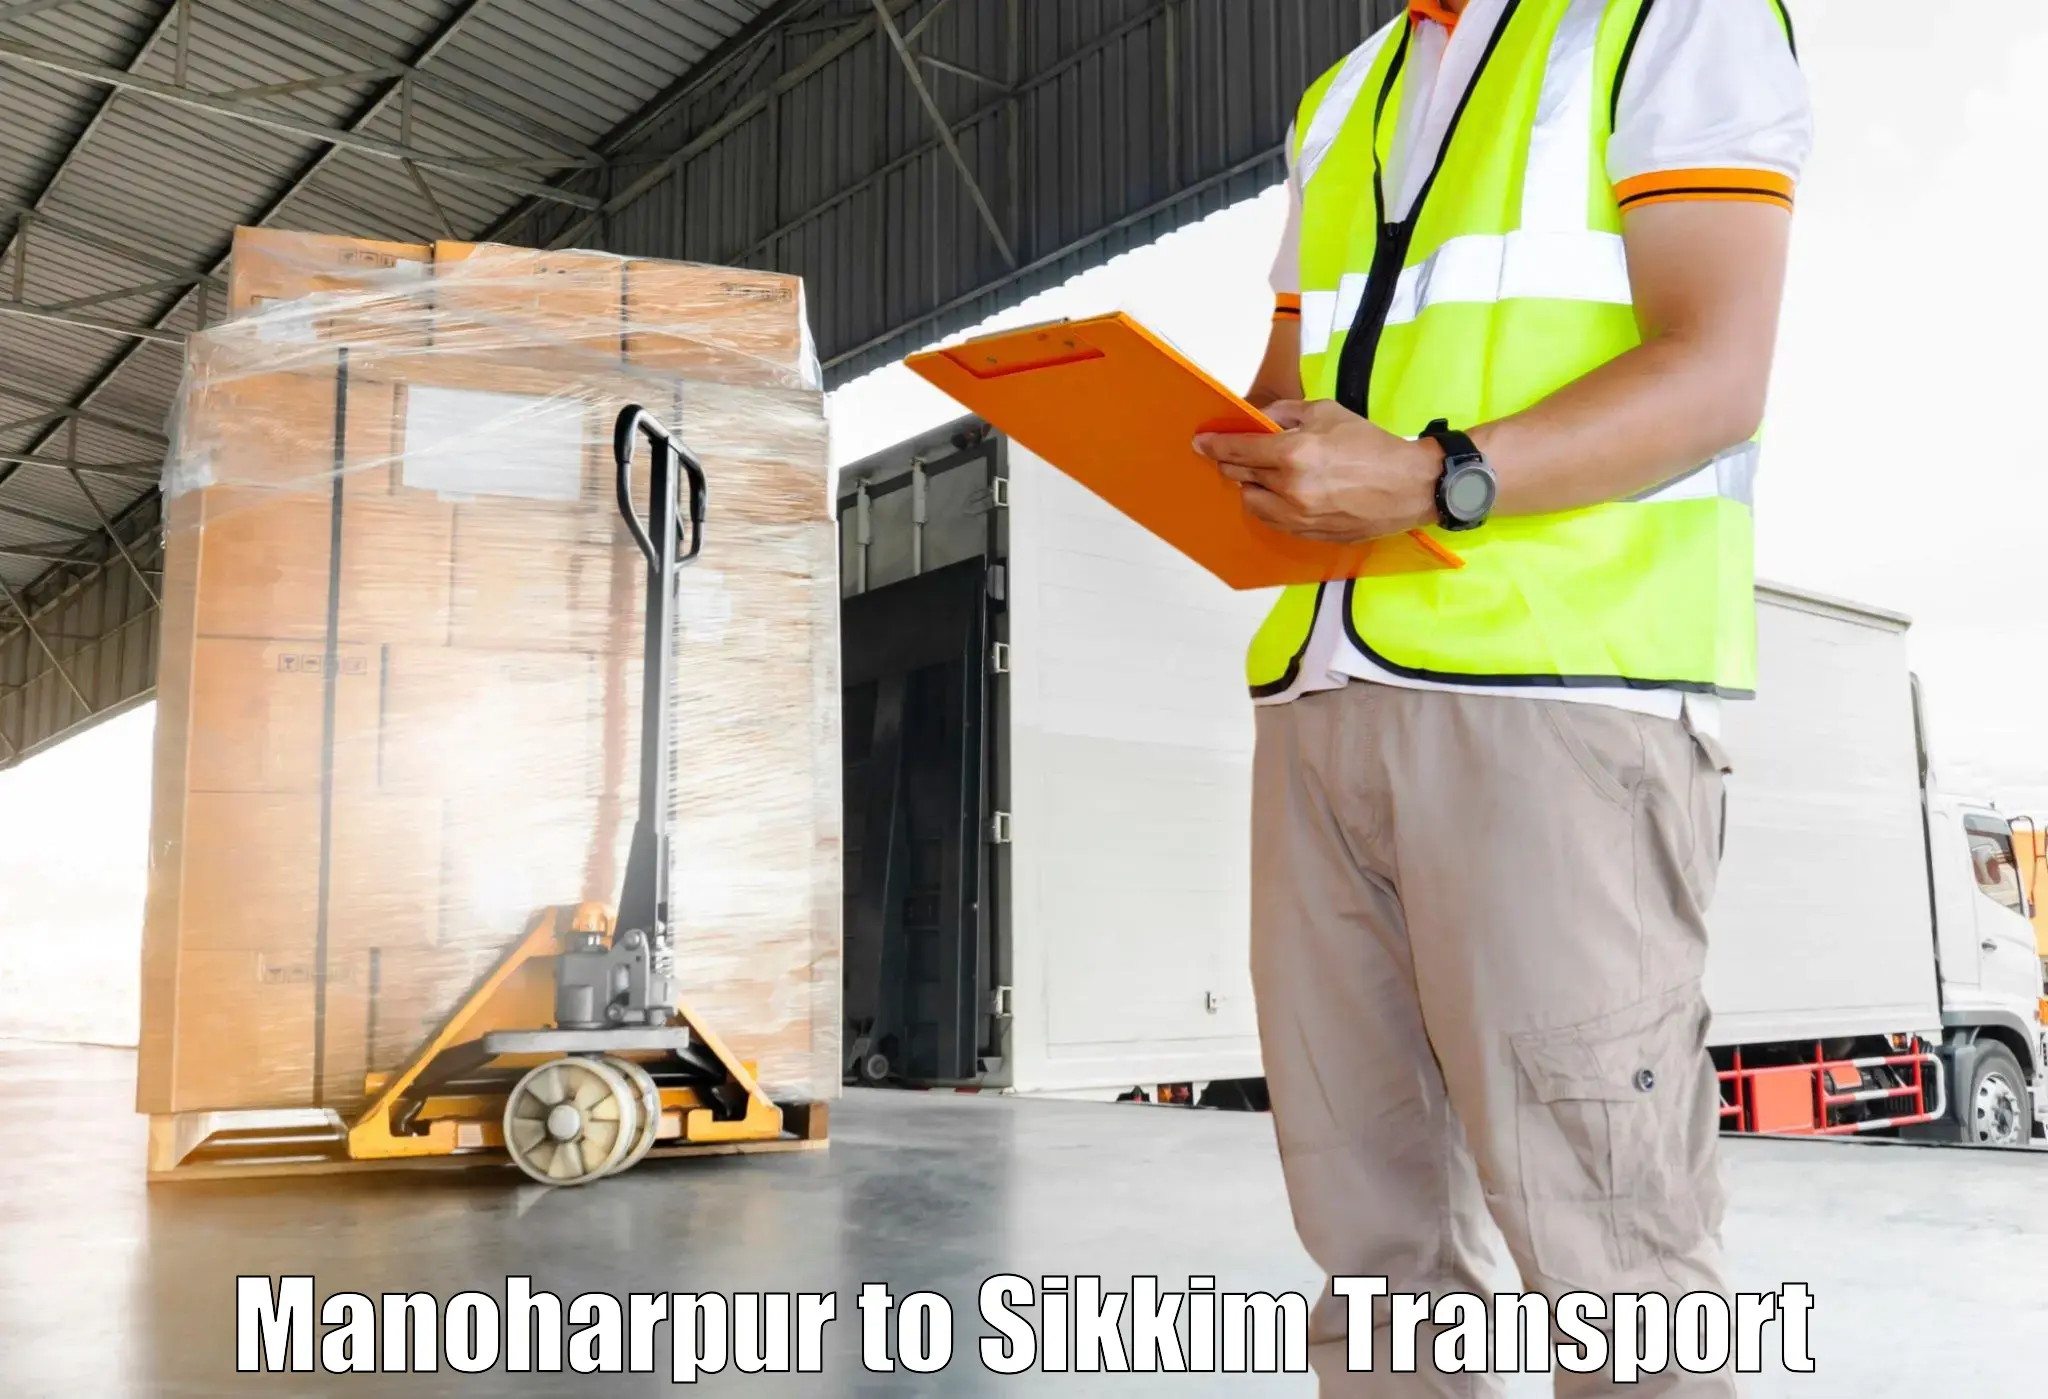 Lorry transport service Manoharpur to Rangpo